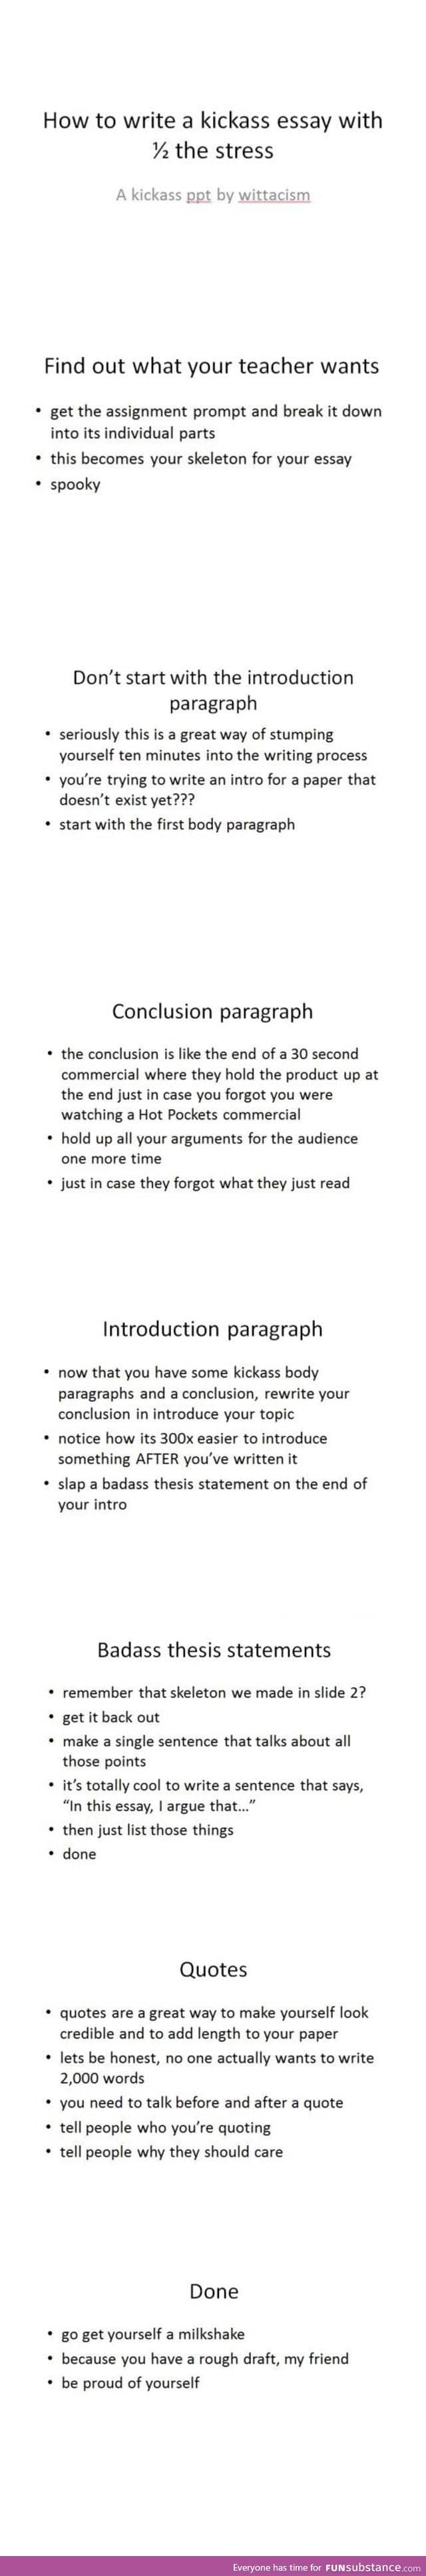 How to write a kick ass essay